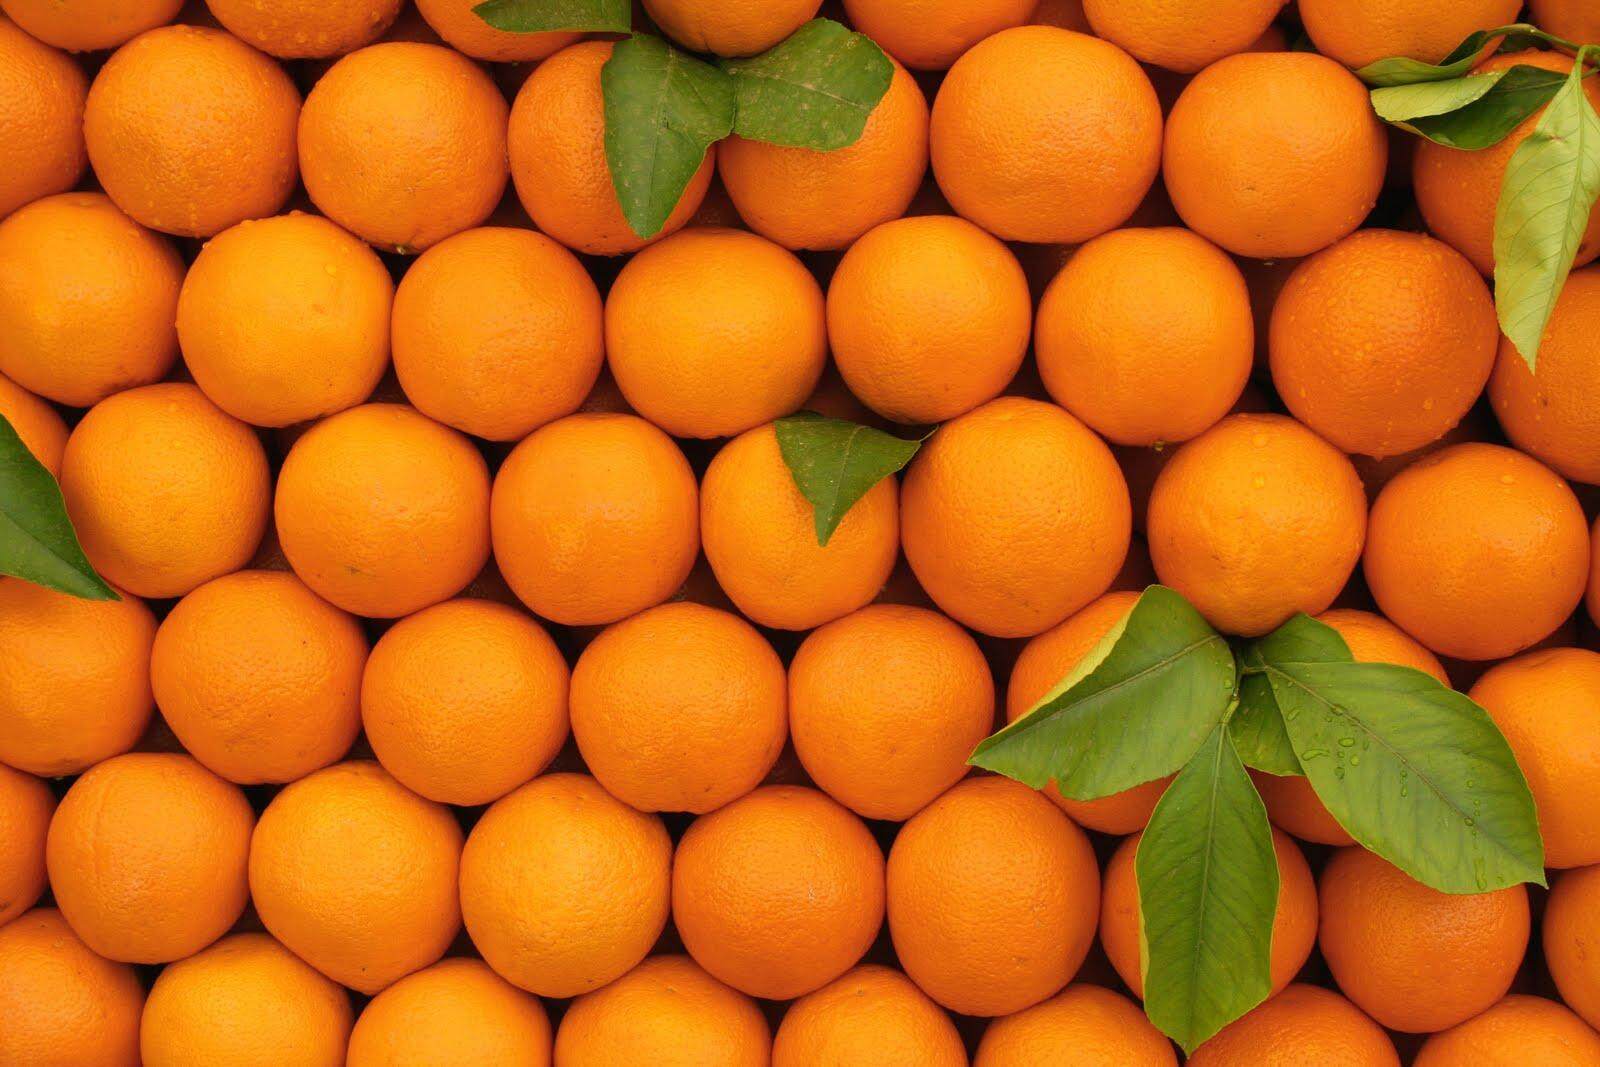 ข้อมูลเพิ่มเติมของ ✈️  ส้มไร้เมล็ด ส้มผลไม้มงคล สรรพคุณของส้ม ส้มคัดพิเศษ! 500 กรัม ส้มเปลือกบาง หวานฉ่ำ เก็บได้นาน 15-20 วัน 14 วัน ยิ่งเก็บนานยิ่งหวานฉ่ำ